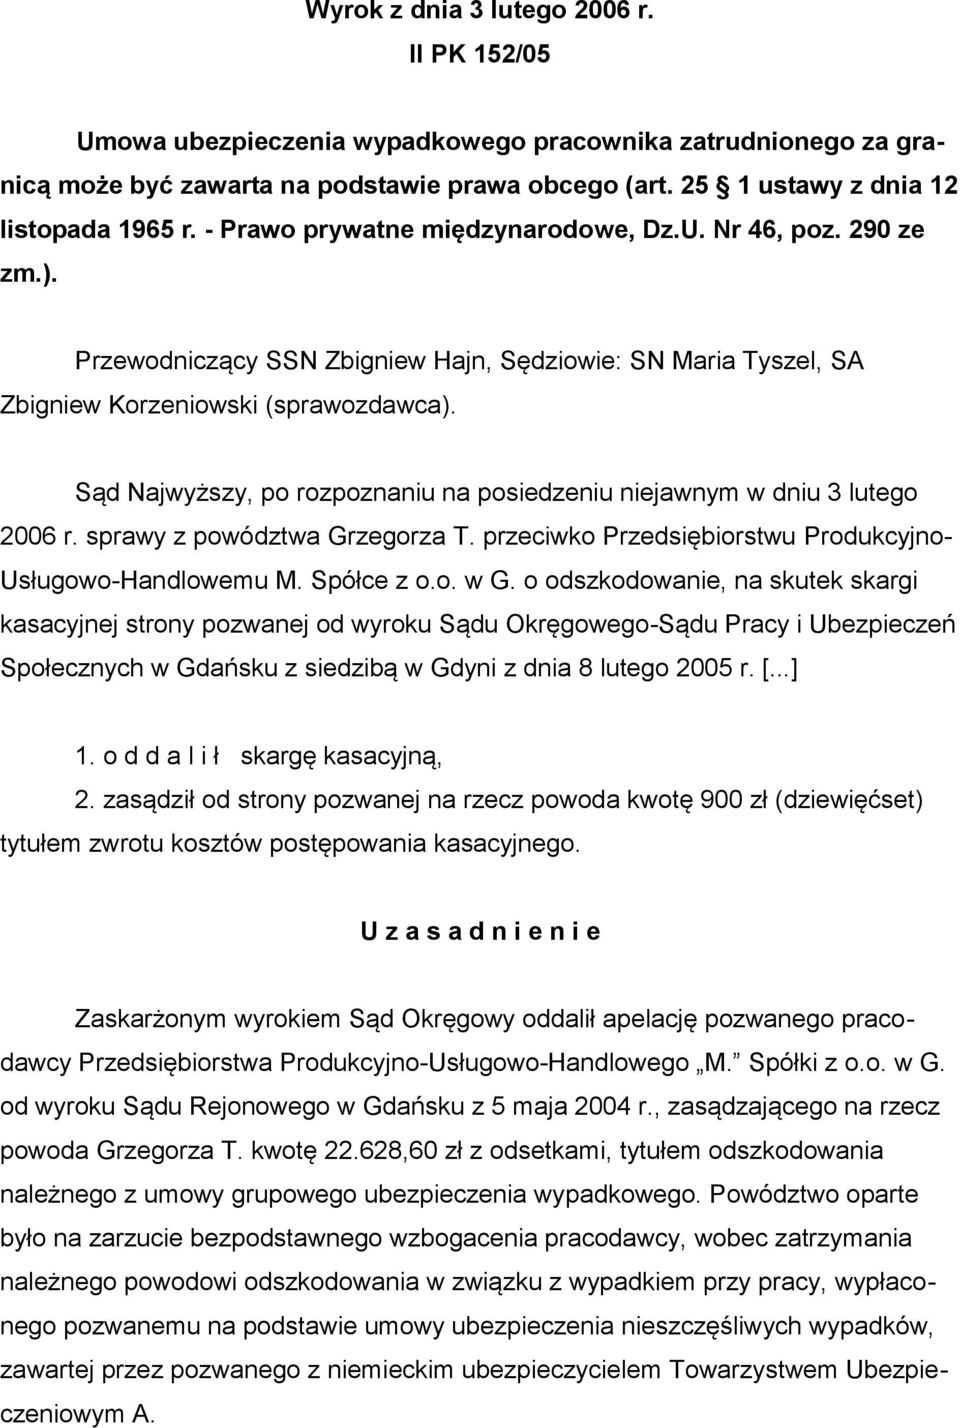 Sąd Najwyższy, po rozpoznaniu na posiedzeniu niejawnym w dniu 3 lutego 2006 r. sprawy z powództwa Grzegorza T. przeciwko Przedsiębiorstwu Produkcyjno- Usługowo-Handlowemu M. Spółce z o.o. w G.